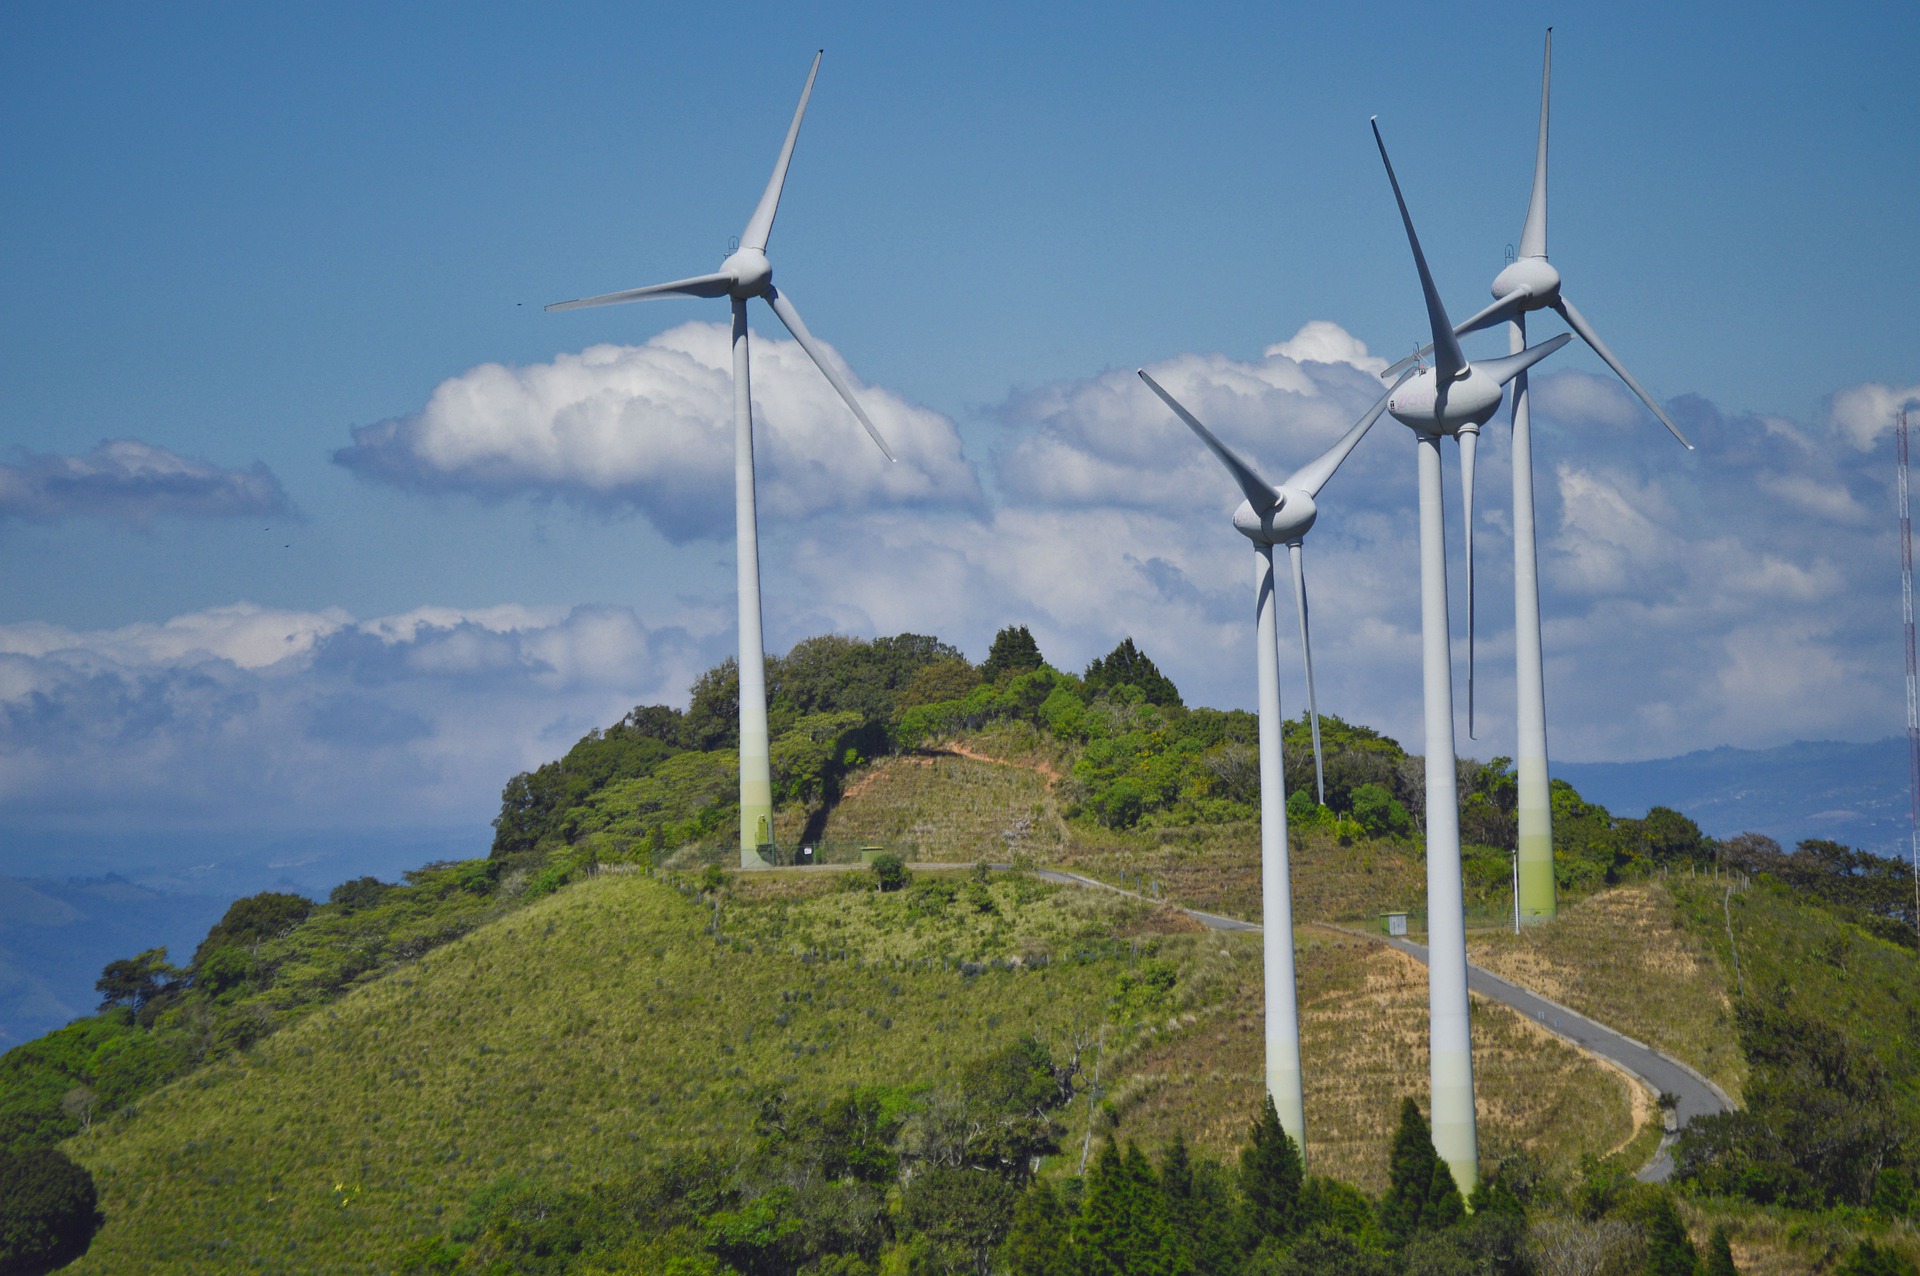 Bild von Windkraftanlagen auf einem Berg